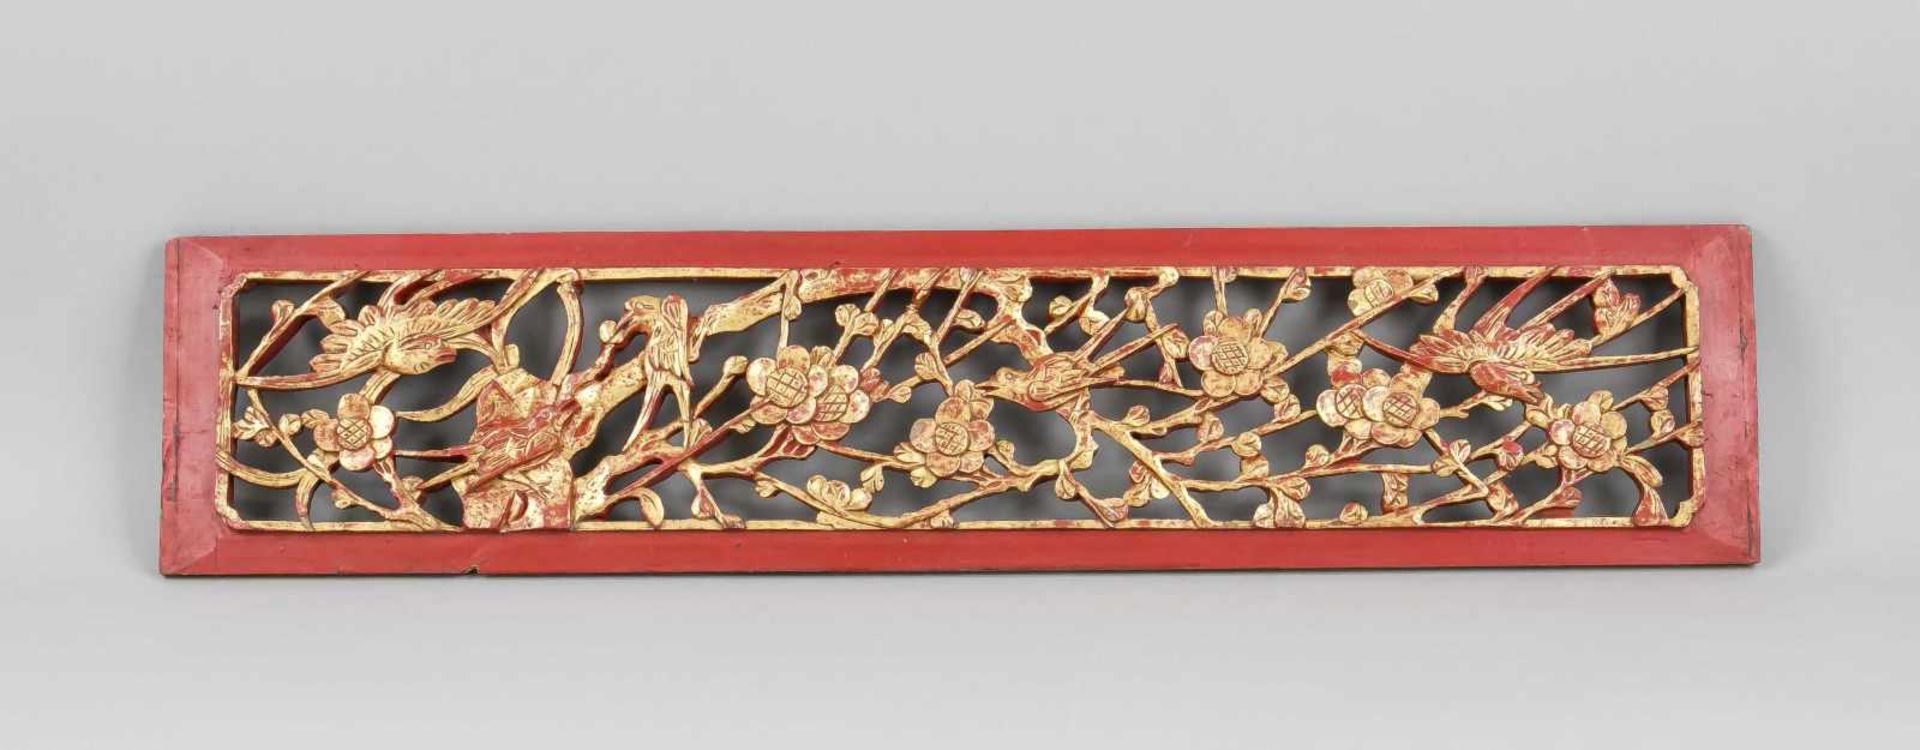 Geschnitztes Holzpaneel, China, 1. H. 20. Jh. Durchbrochen gearbeitete, vollplastischeSchnitzerei